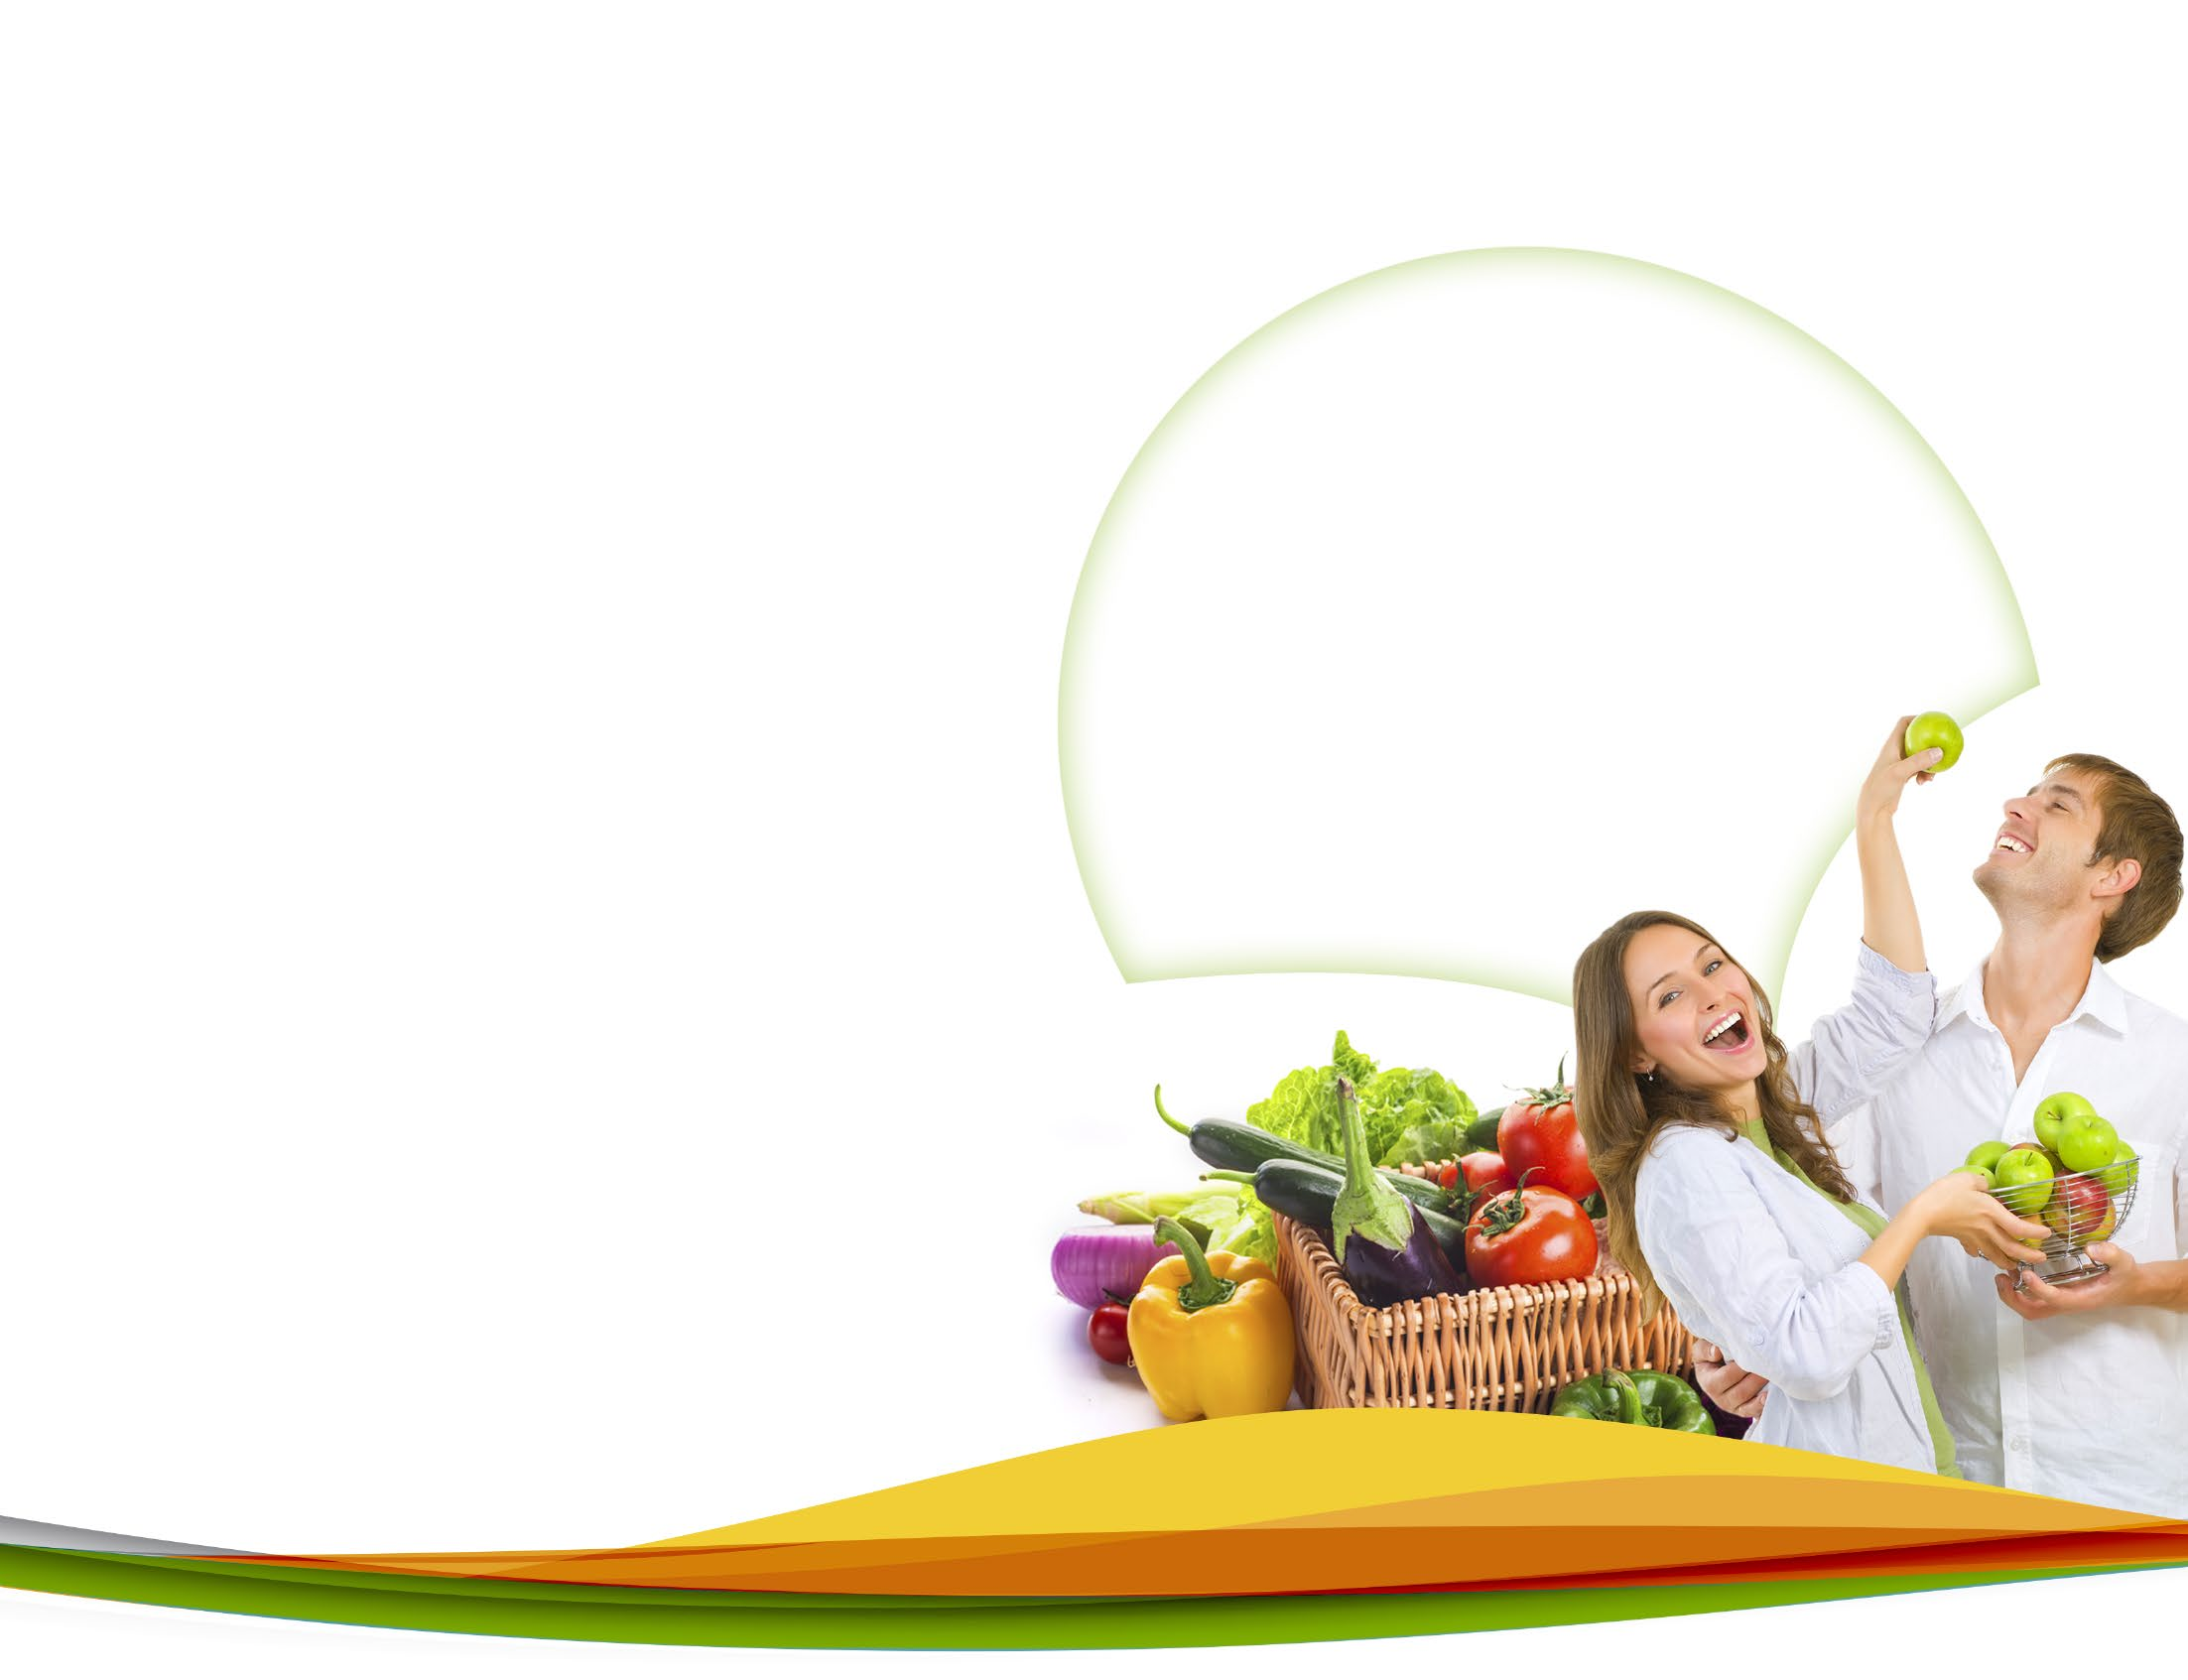 Consejos de alimentación saludable cuando se come fuera de casa Utiliza siempre aceites vegetales (soya, maíz, canola, oliva), evita freír y adiciona estos aceites a tus ensaladas en baja cantidad (1